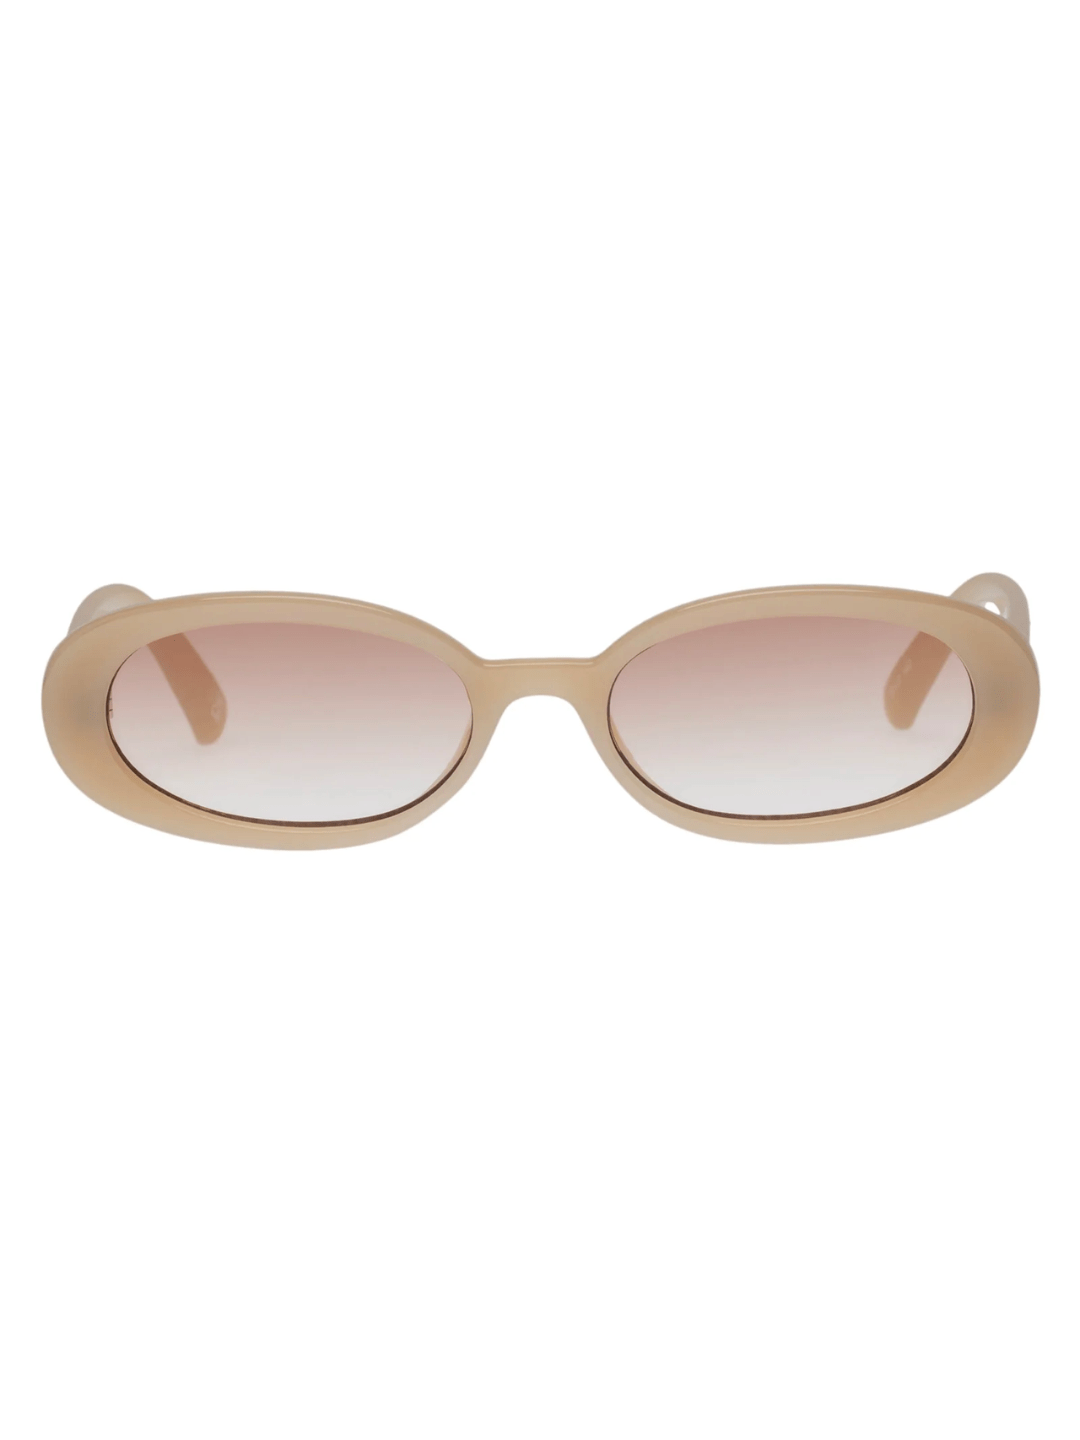 Le Specs Sunglasses Outta Love in Latte